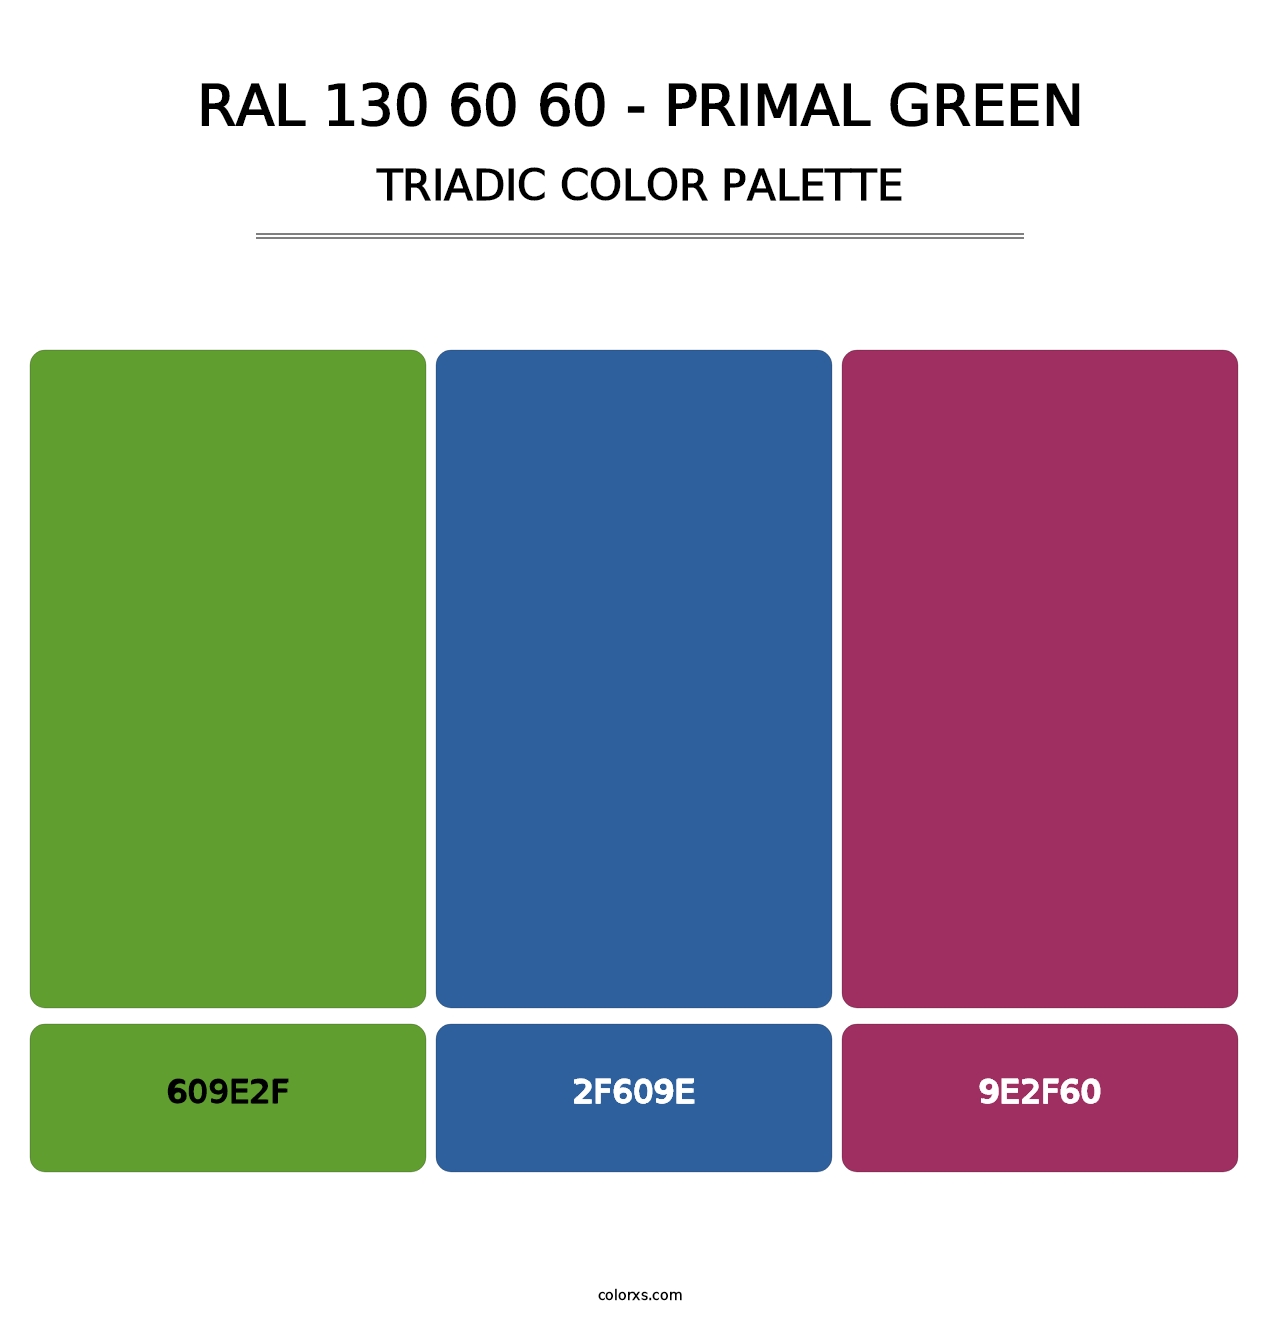 RAL 130 60 60 - Primal Green - Triadic Color Palette